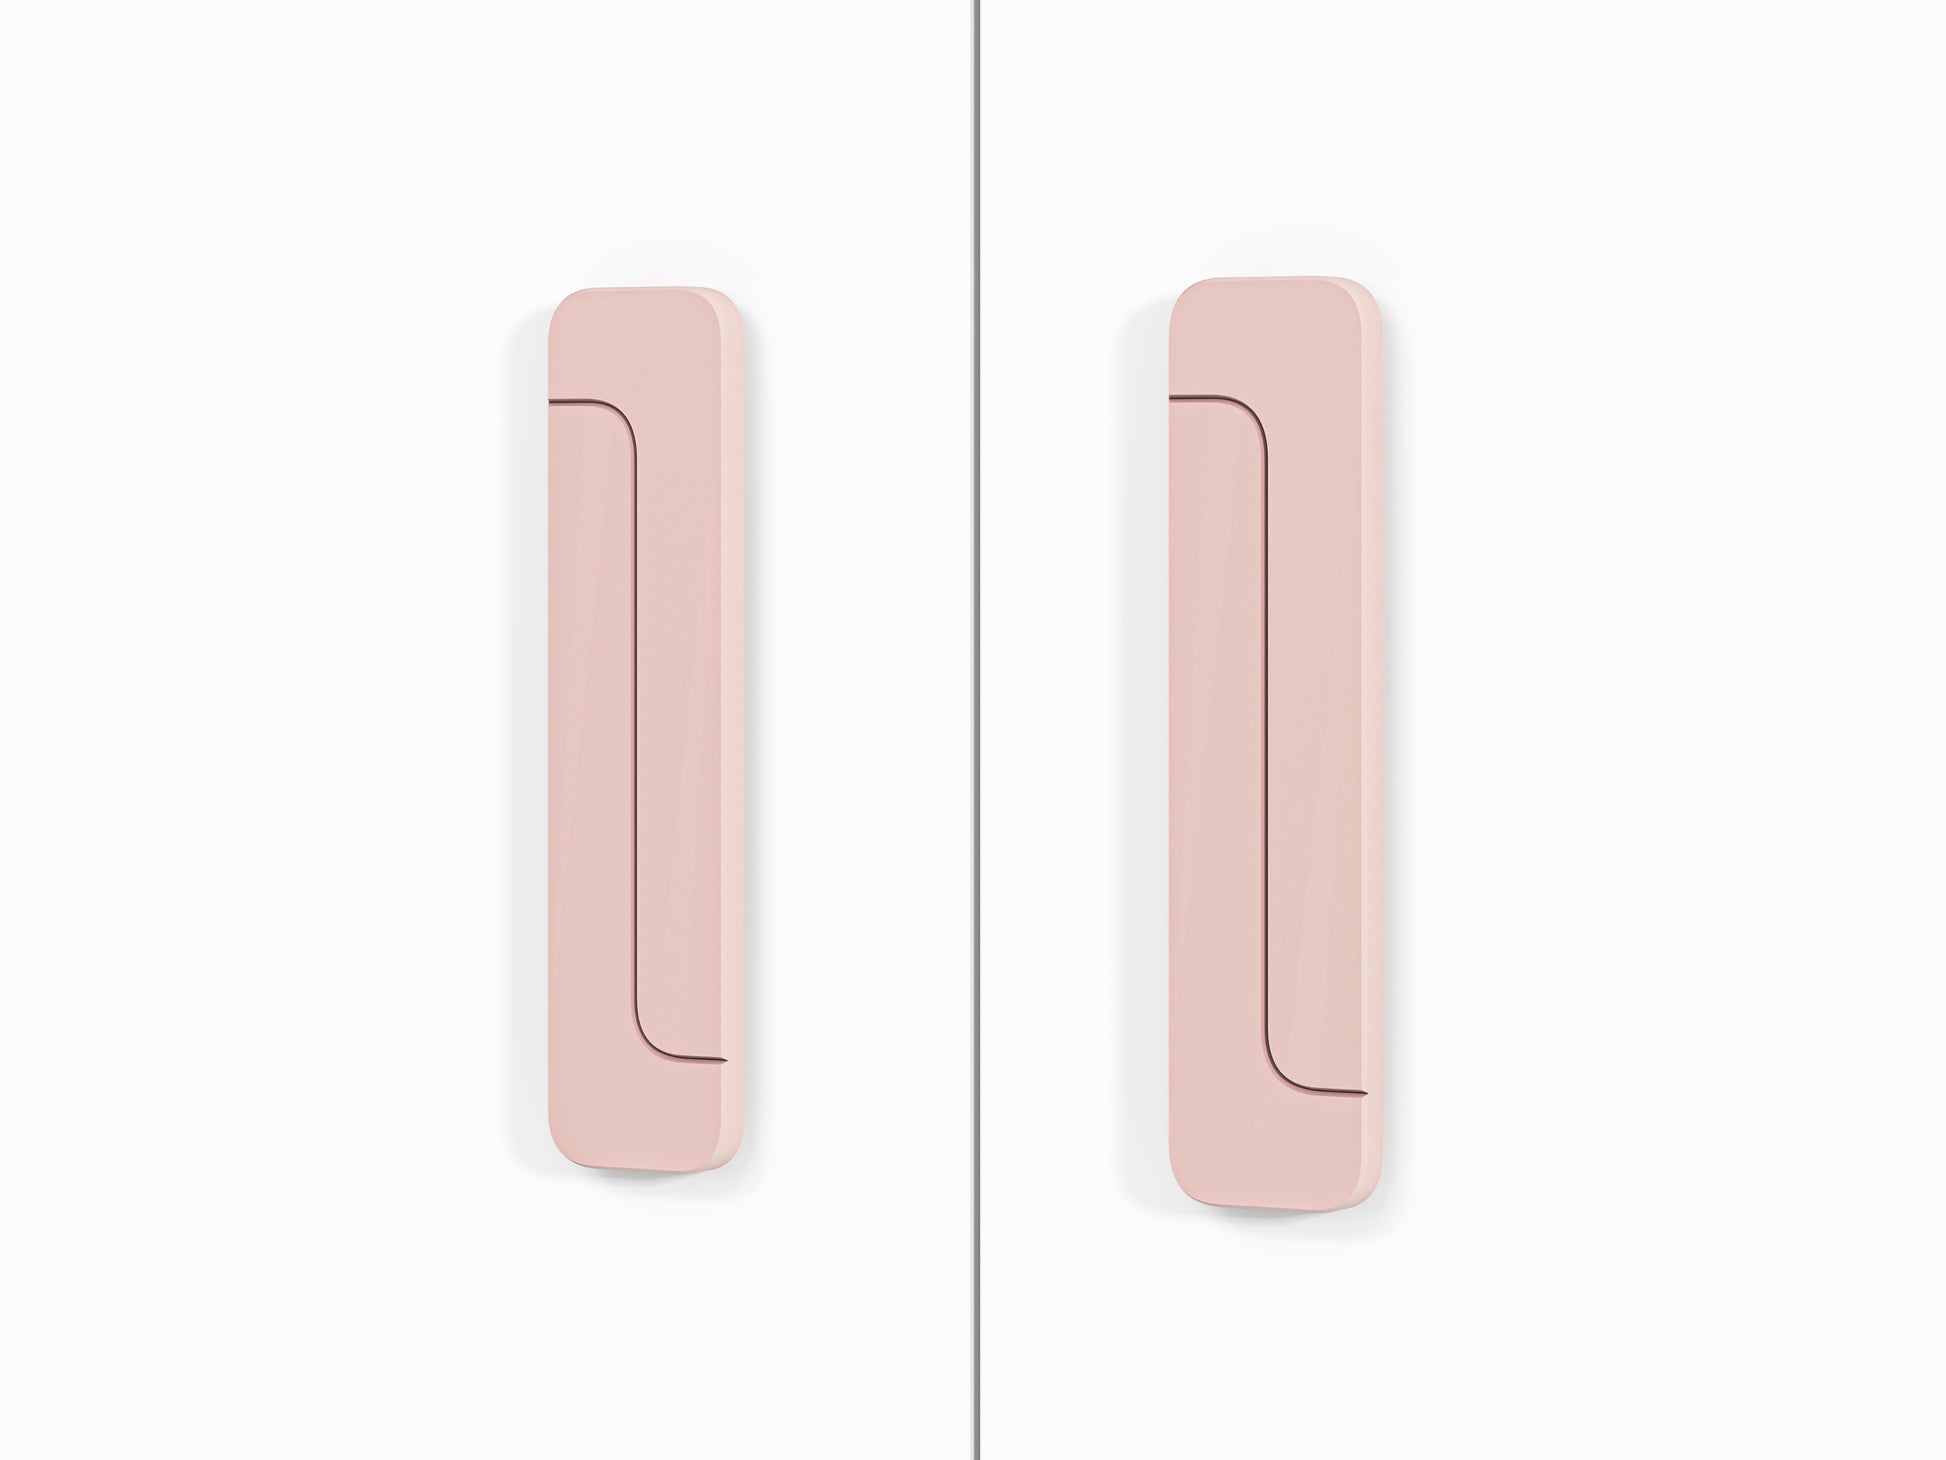 Zbliżenie na różowe uchwyty zastosowane w szafie oraz innych elementach systemu MICK.